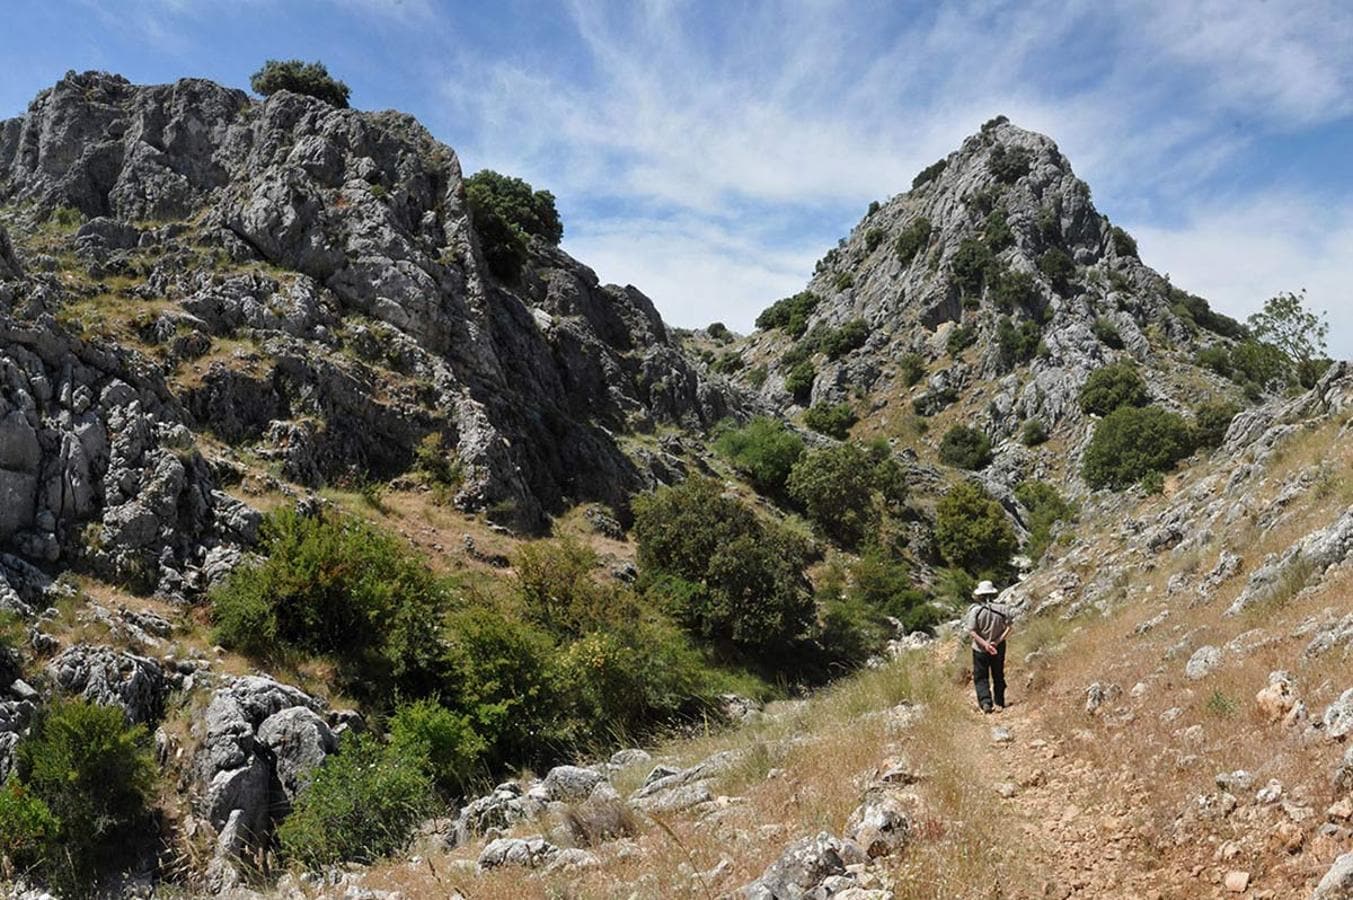 Los espacios naturales se han convertido en una nueva fuente de atracción hacia el medio rural y un aliciente económico para los pueblos. Foto: Parque Natural de la Sierra de Huétor, Granada.